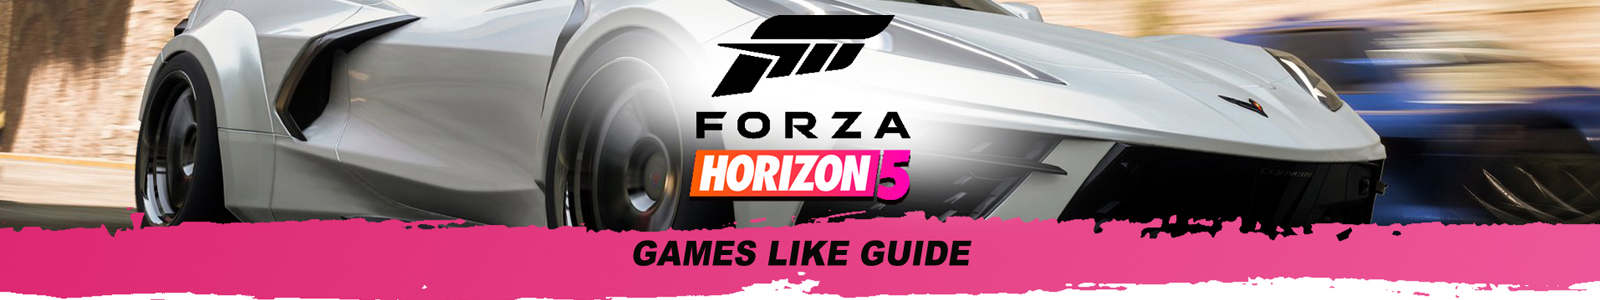 Forza Horizon 5 Spiele wie Anleitung